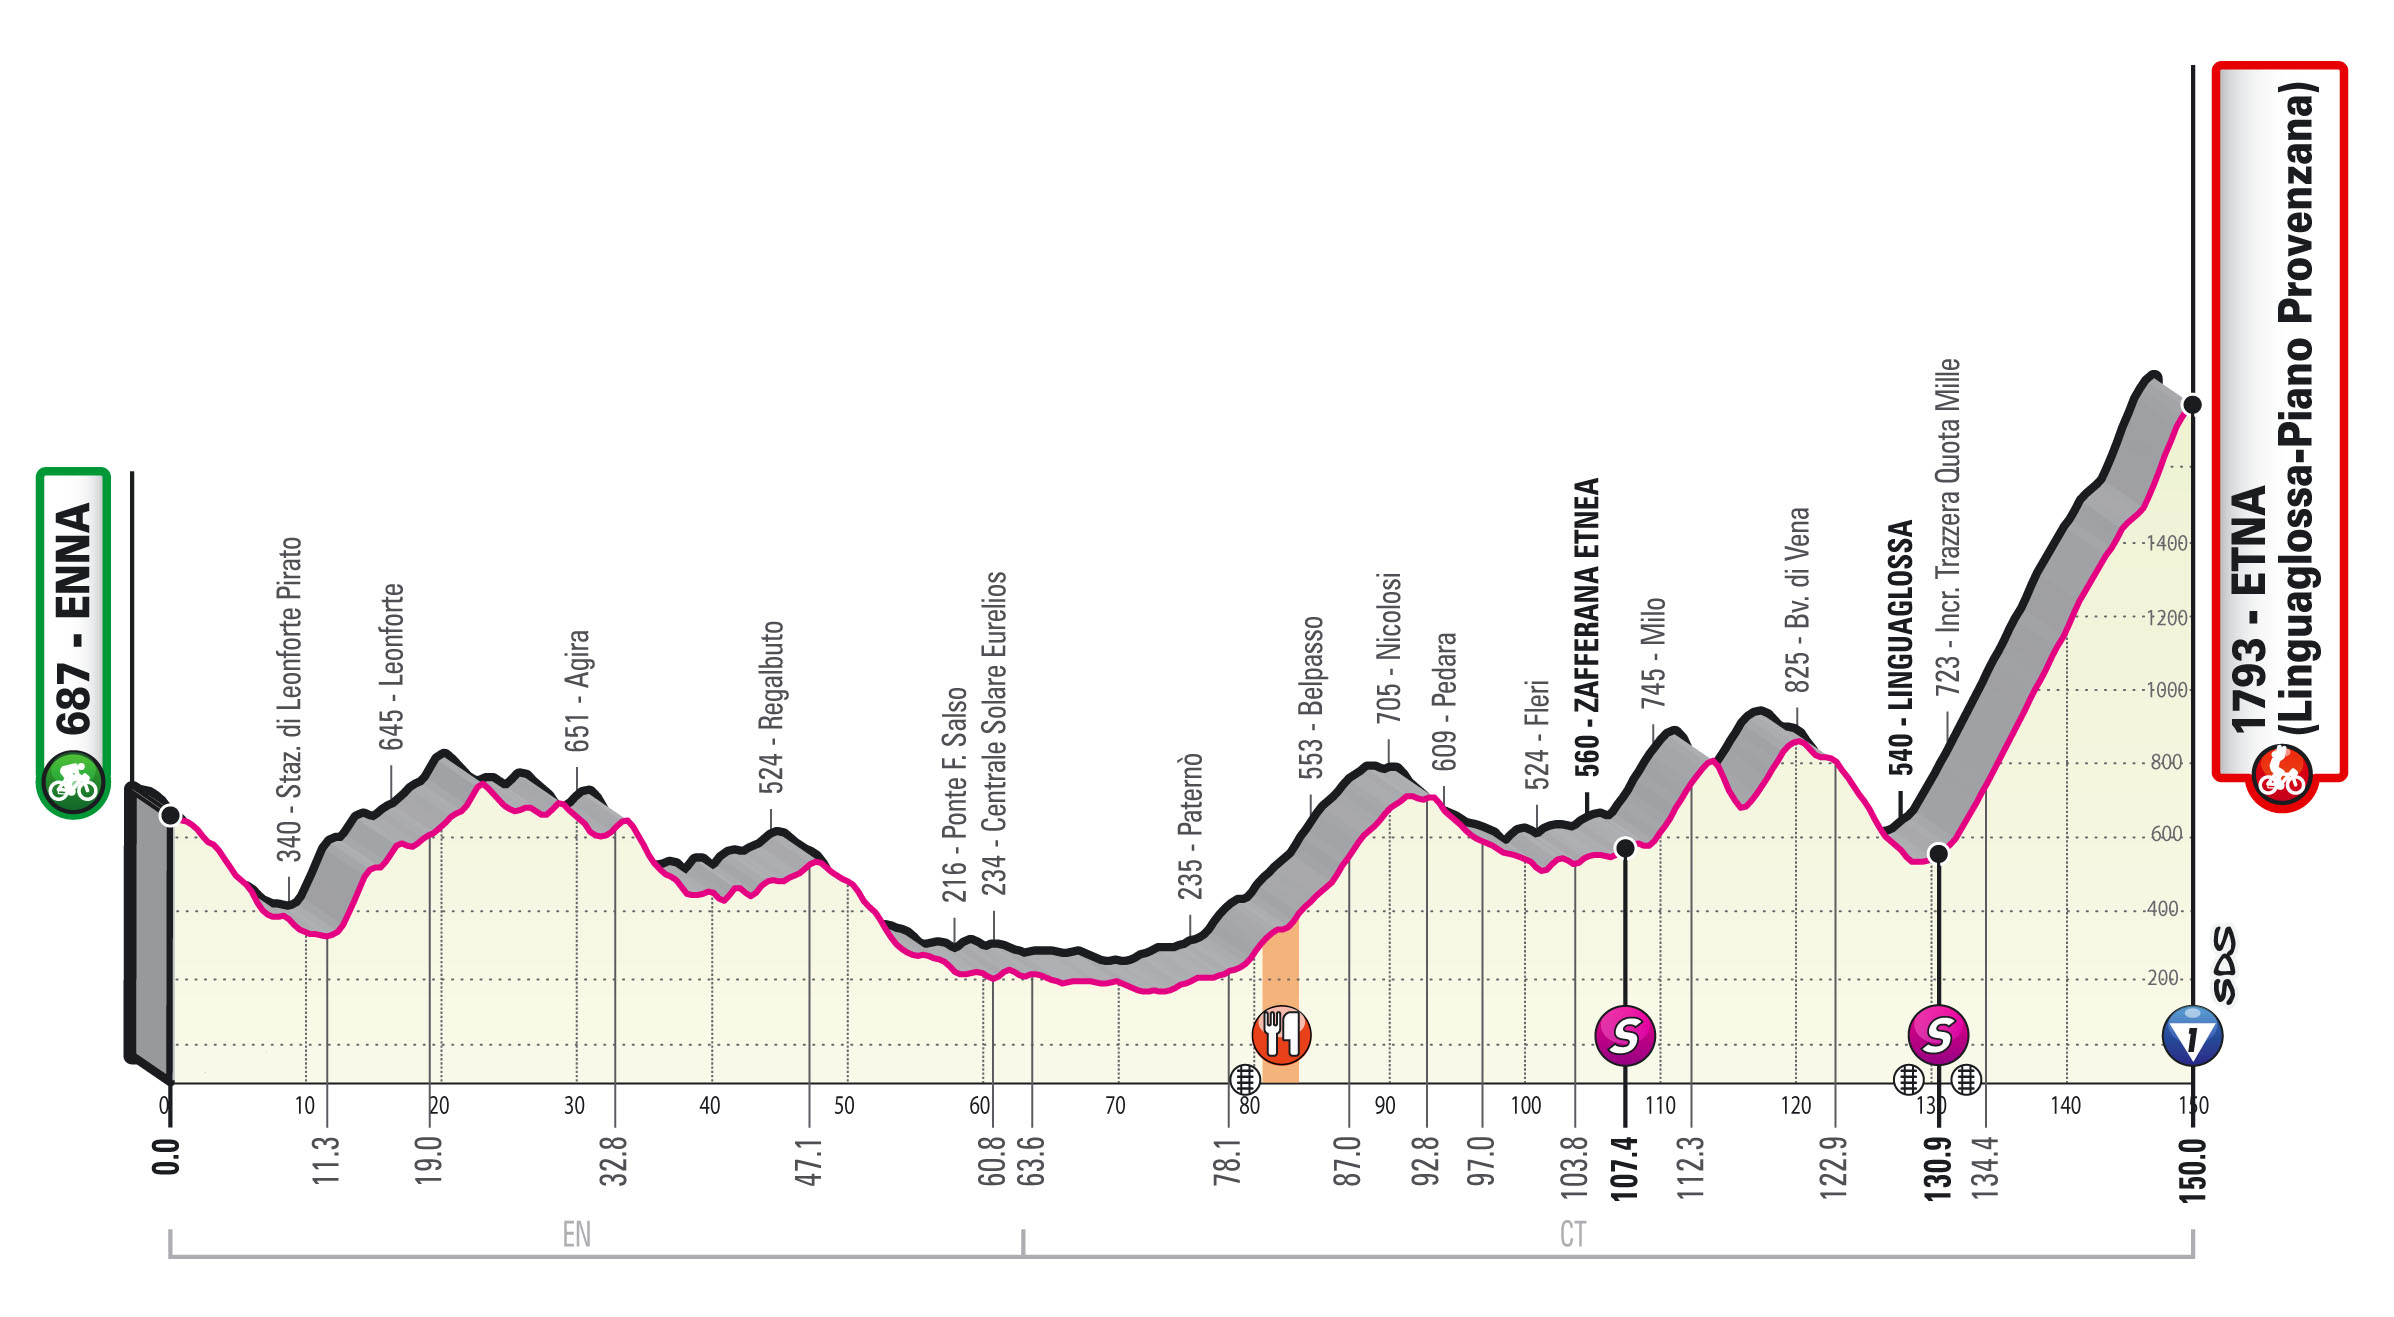 Giro 2020 etappe 3